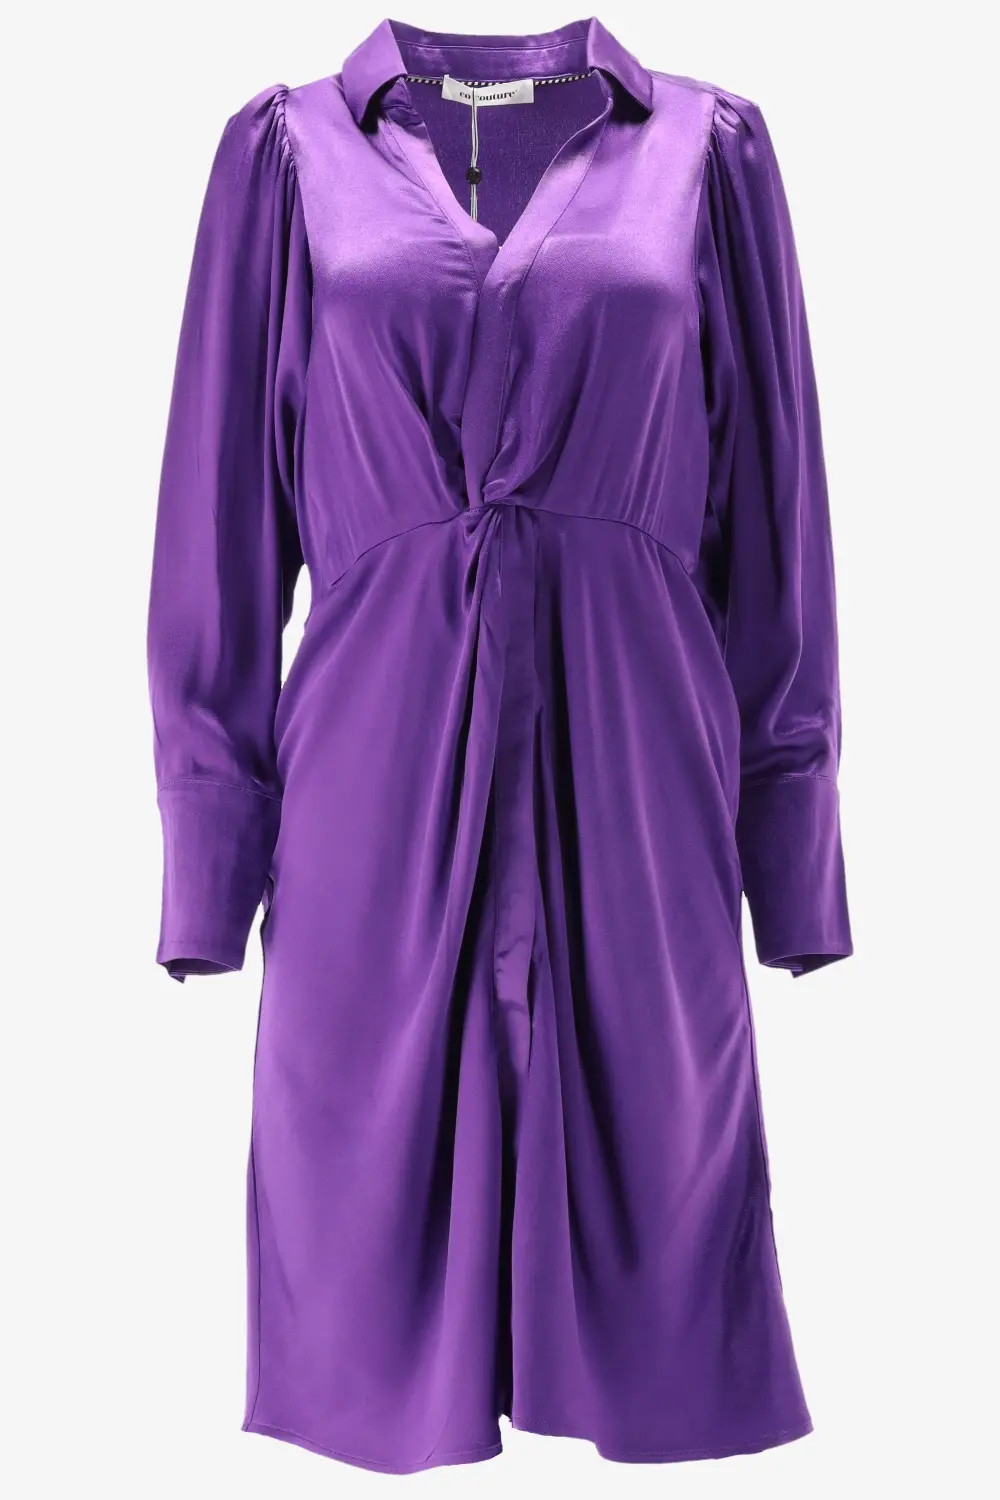 Afbeelding van Co'Couture Cc harvey drape dress violet